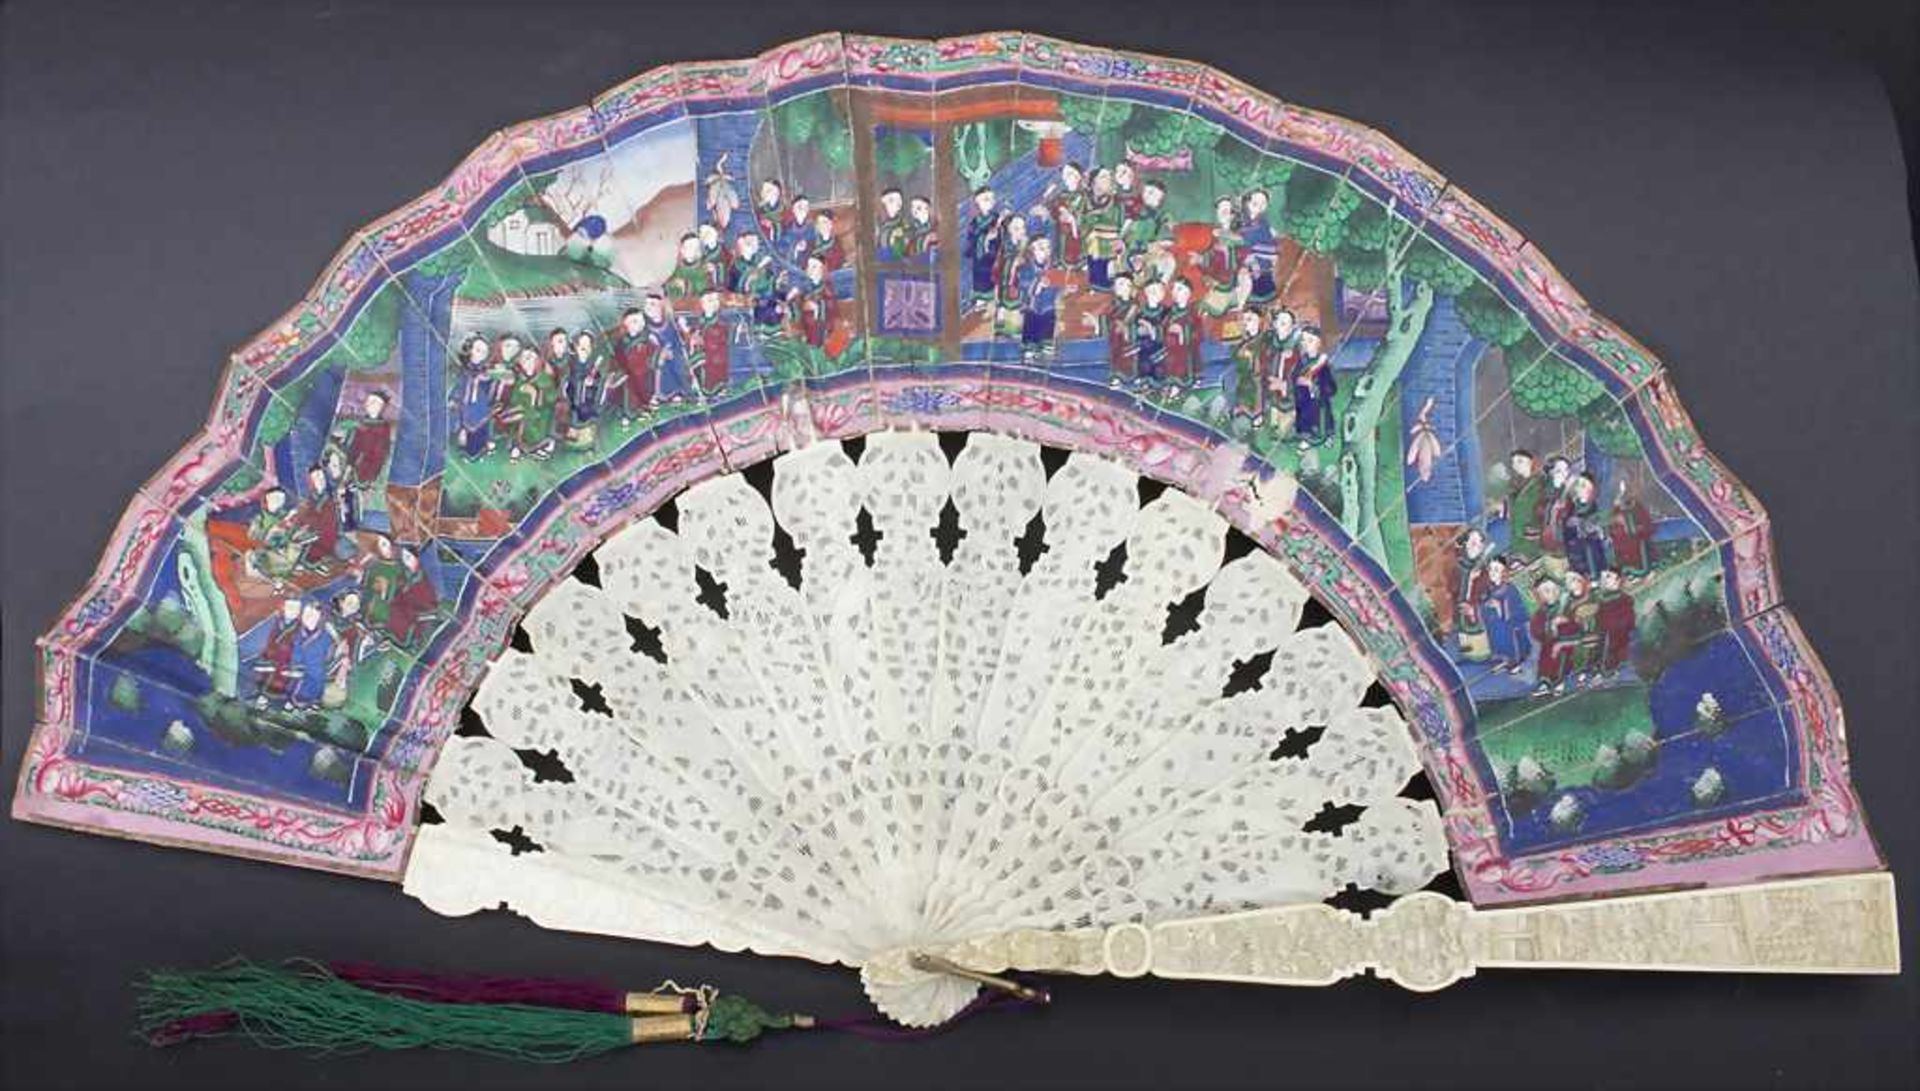 Fächer in originaler Holzschatulle, China, Qing-Dynastie, 18./19. Jh.Material: fein beschnitzt und